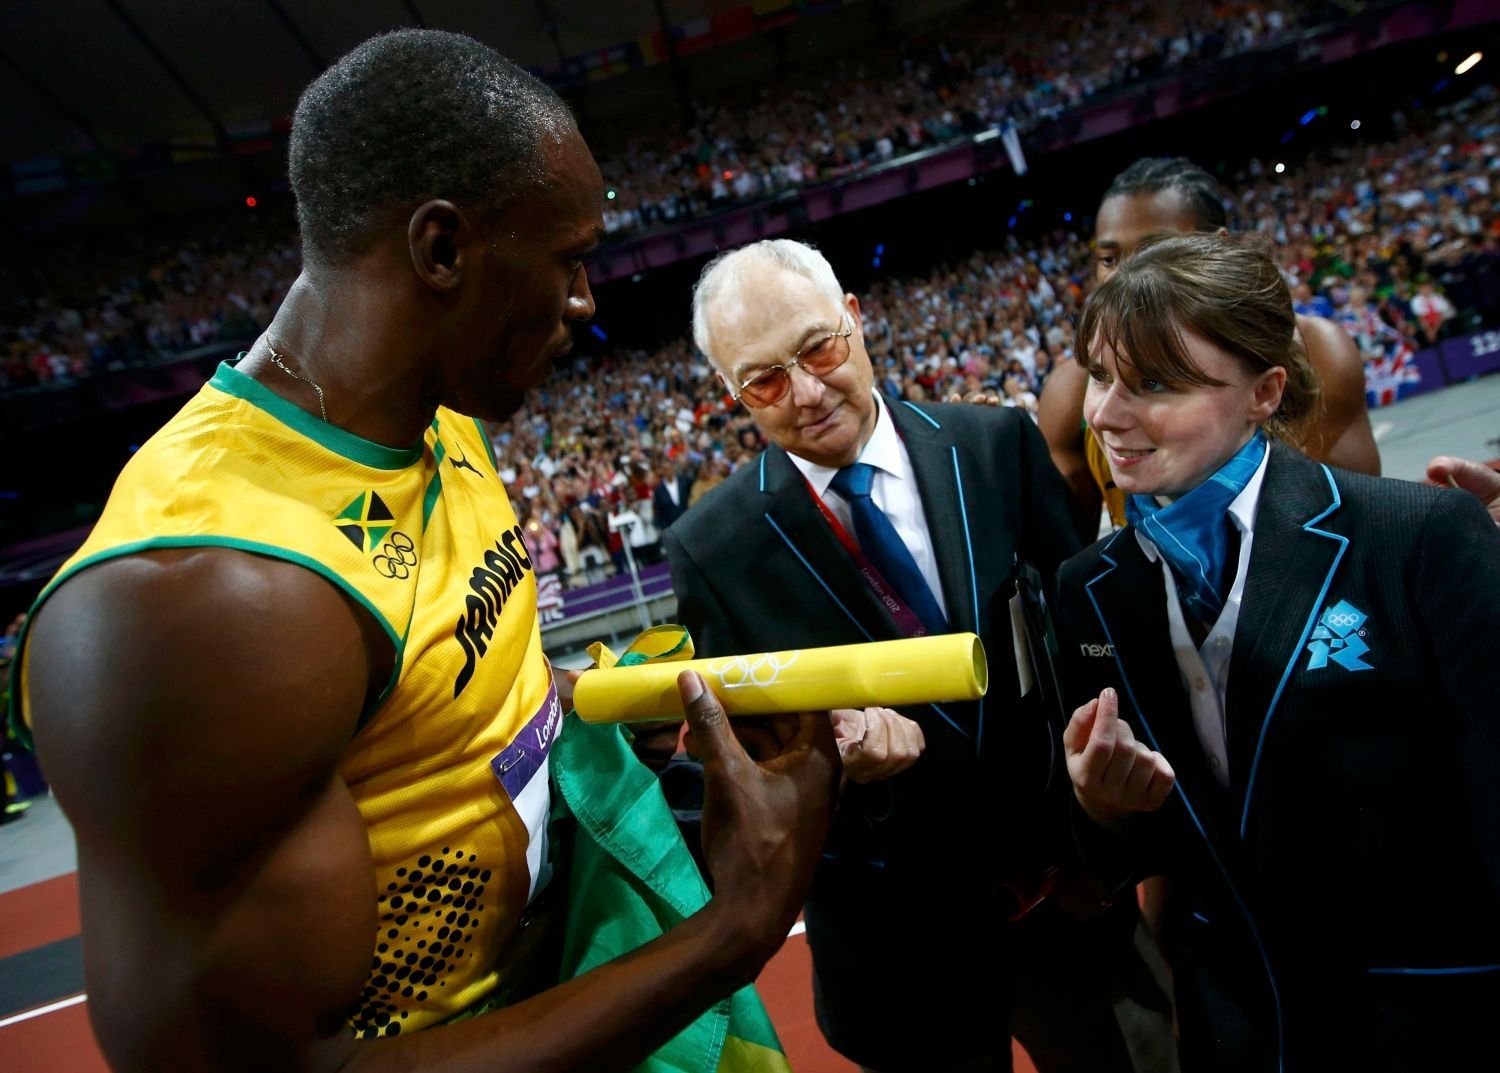 Jamajský sprinter Usain Bolt se raduje z vítězství a světového rekordu ve štafetě 4x100 metrů na OH 2012 v Londýně.